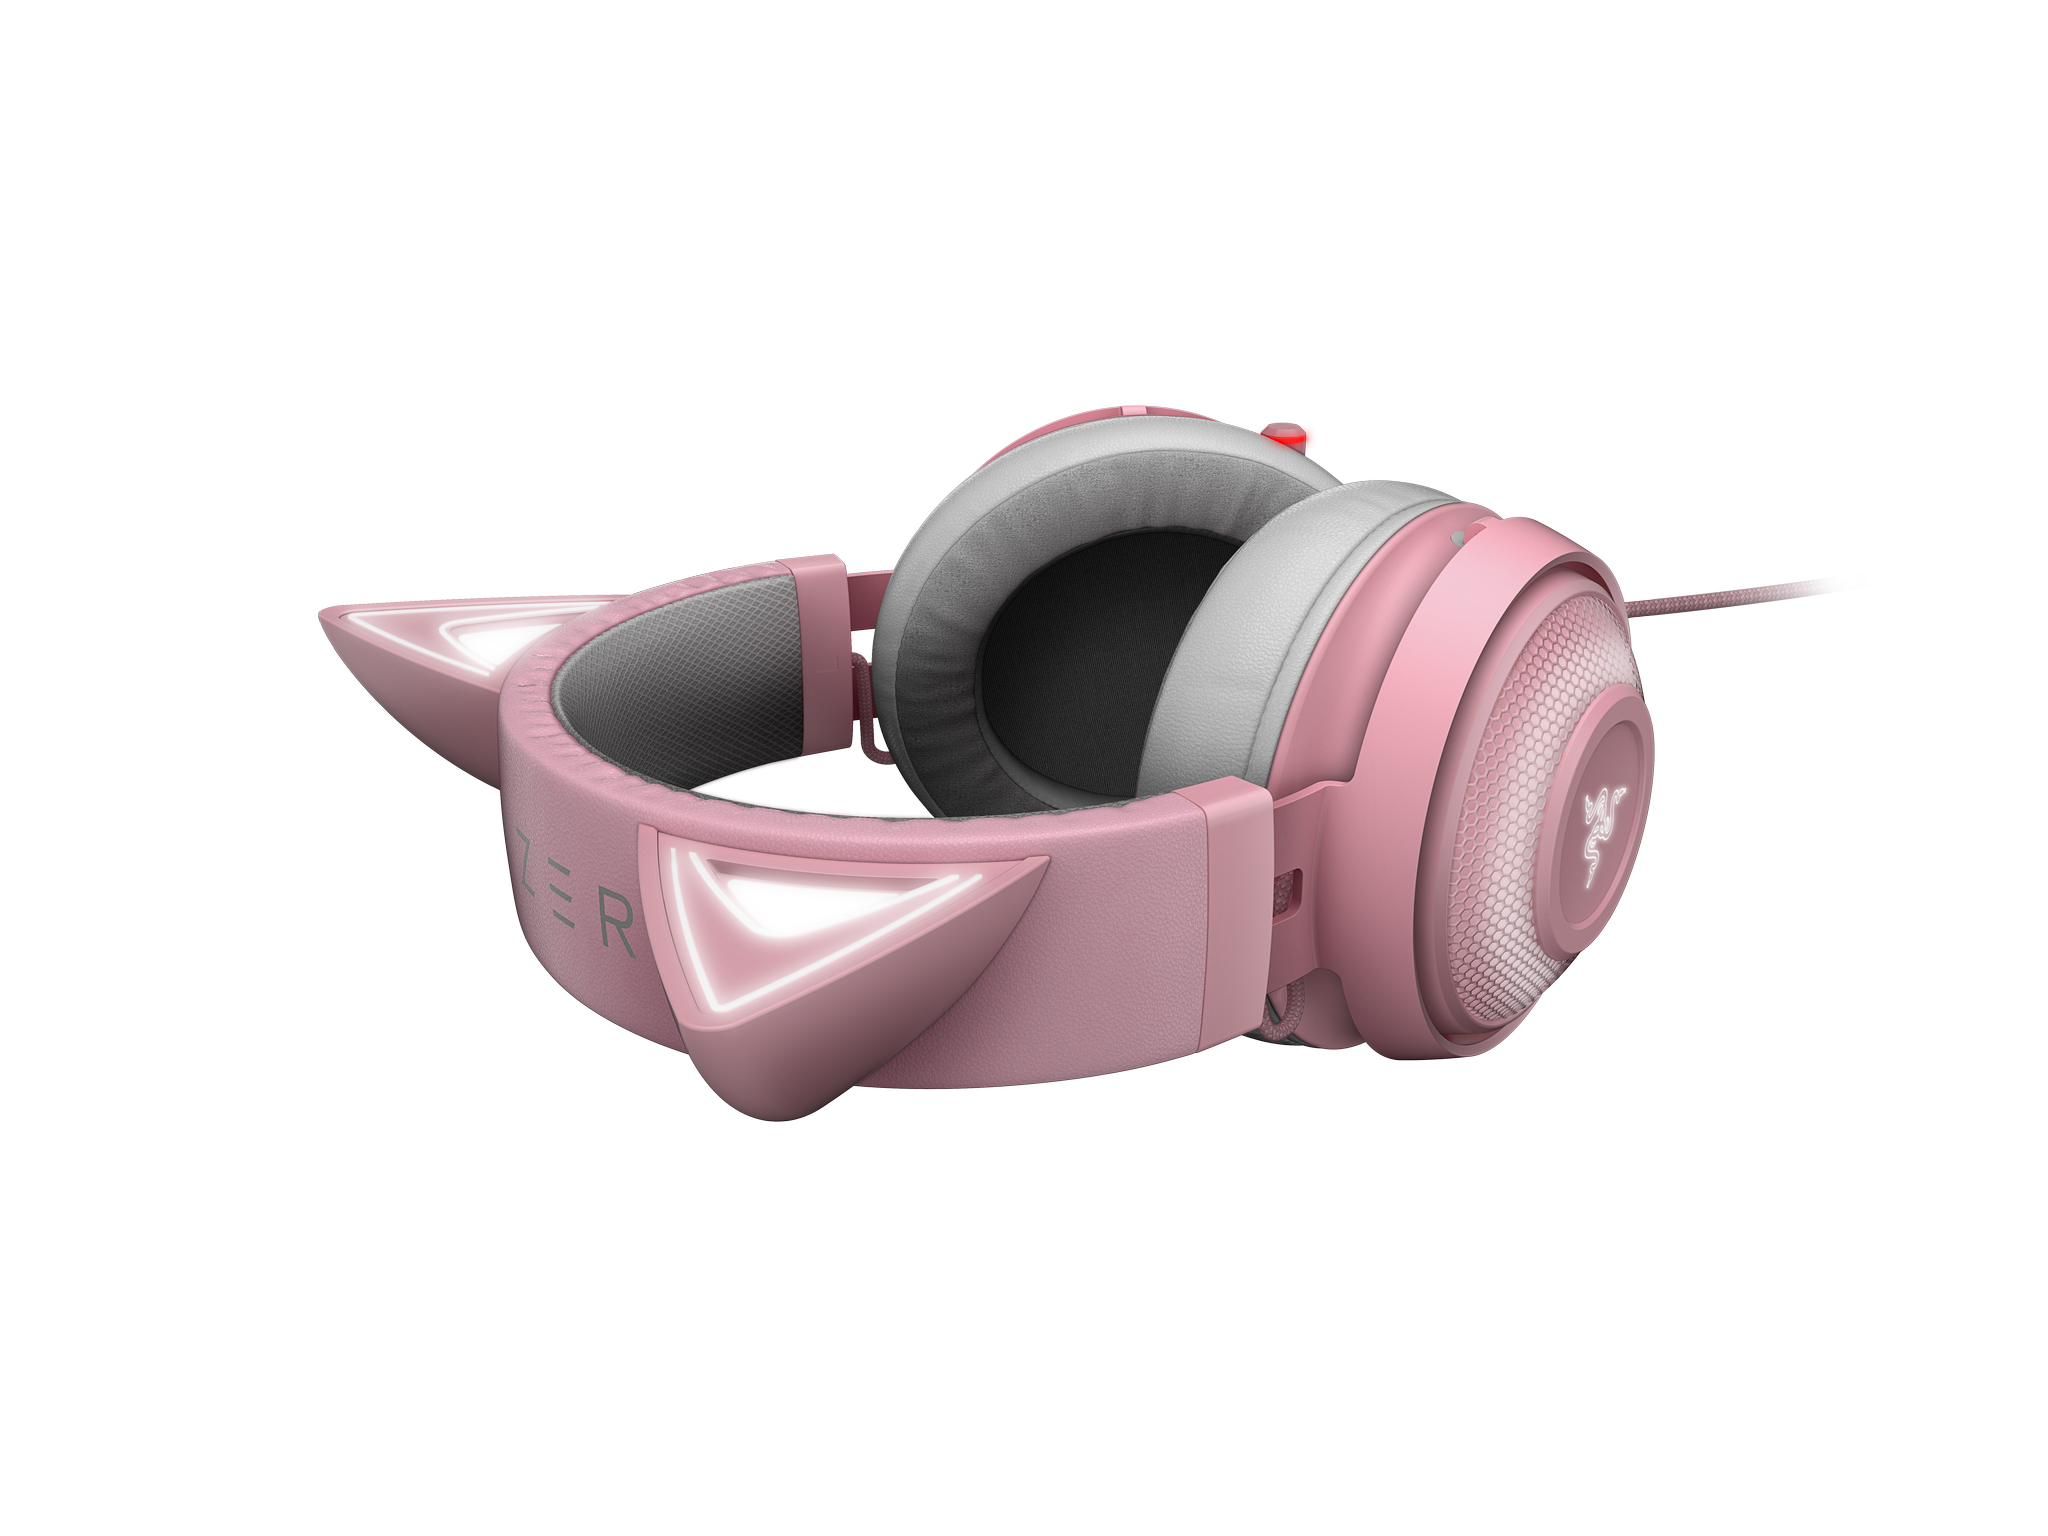 RAZER Kraken Gaming Edition, Quartz Headset Kitty Over-ear